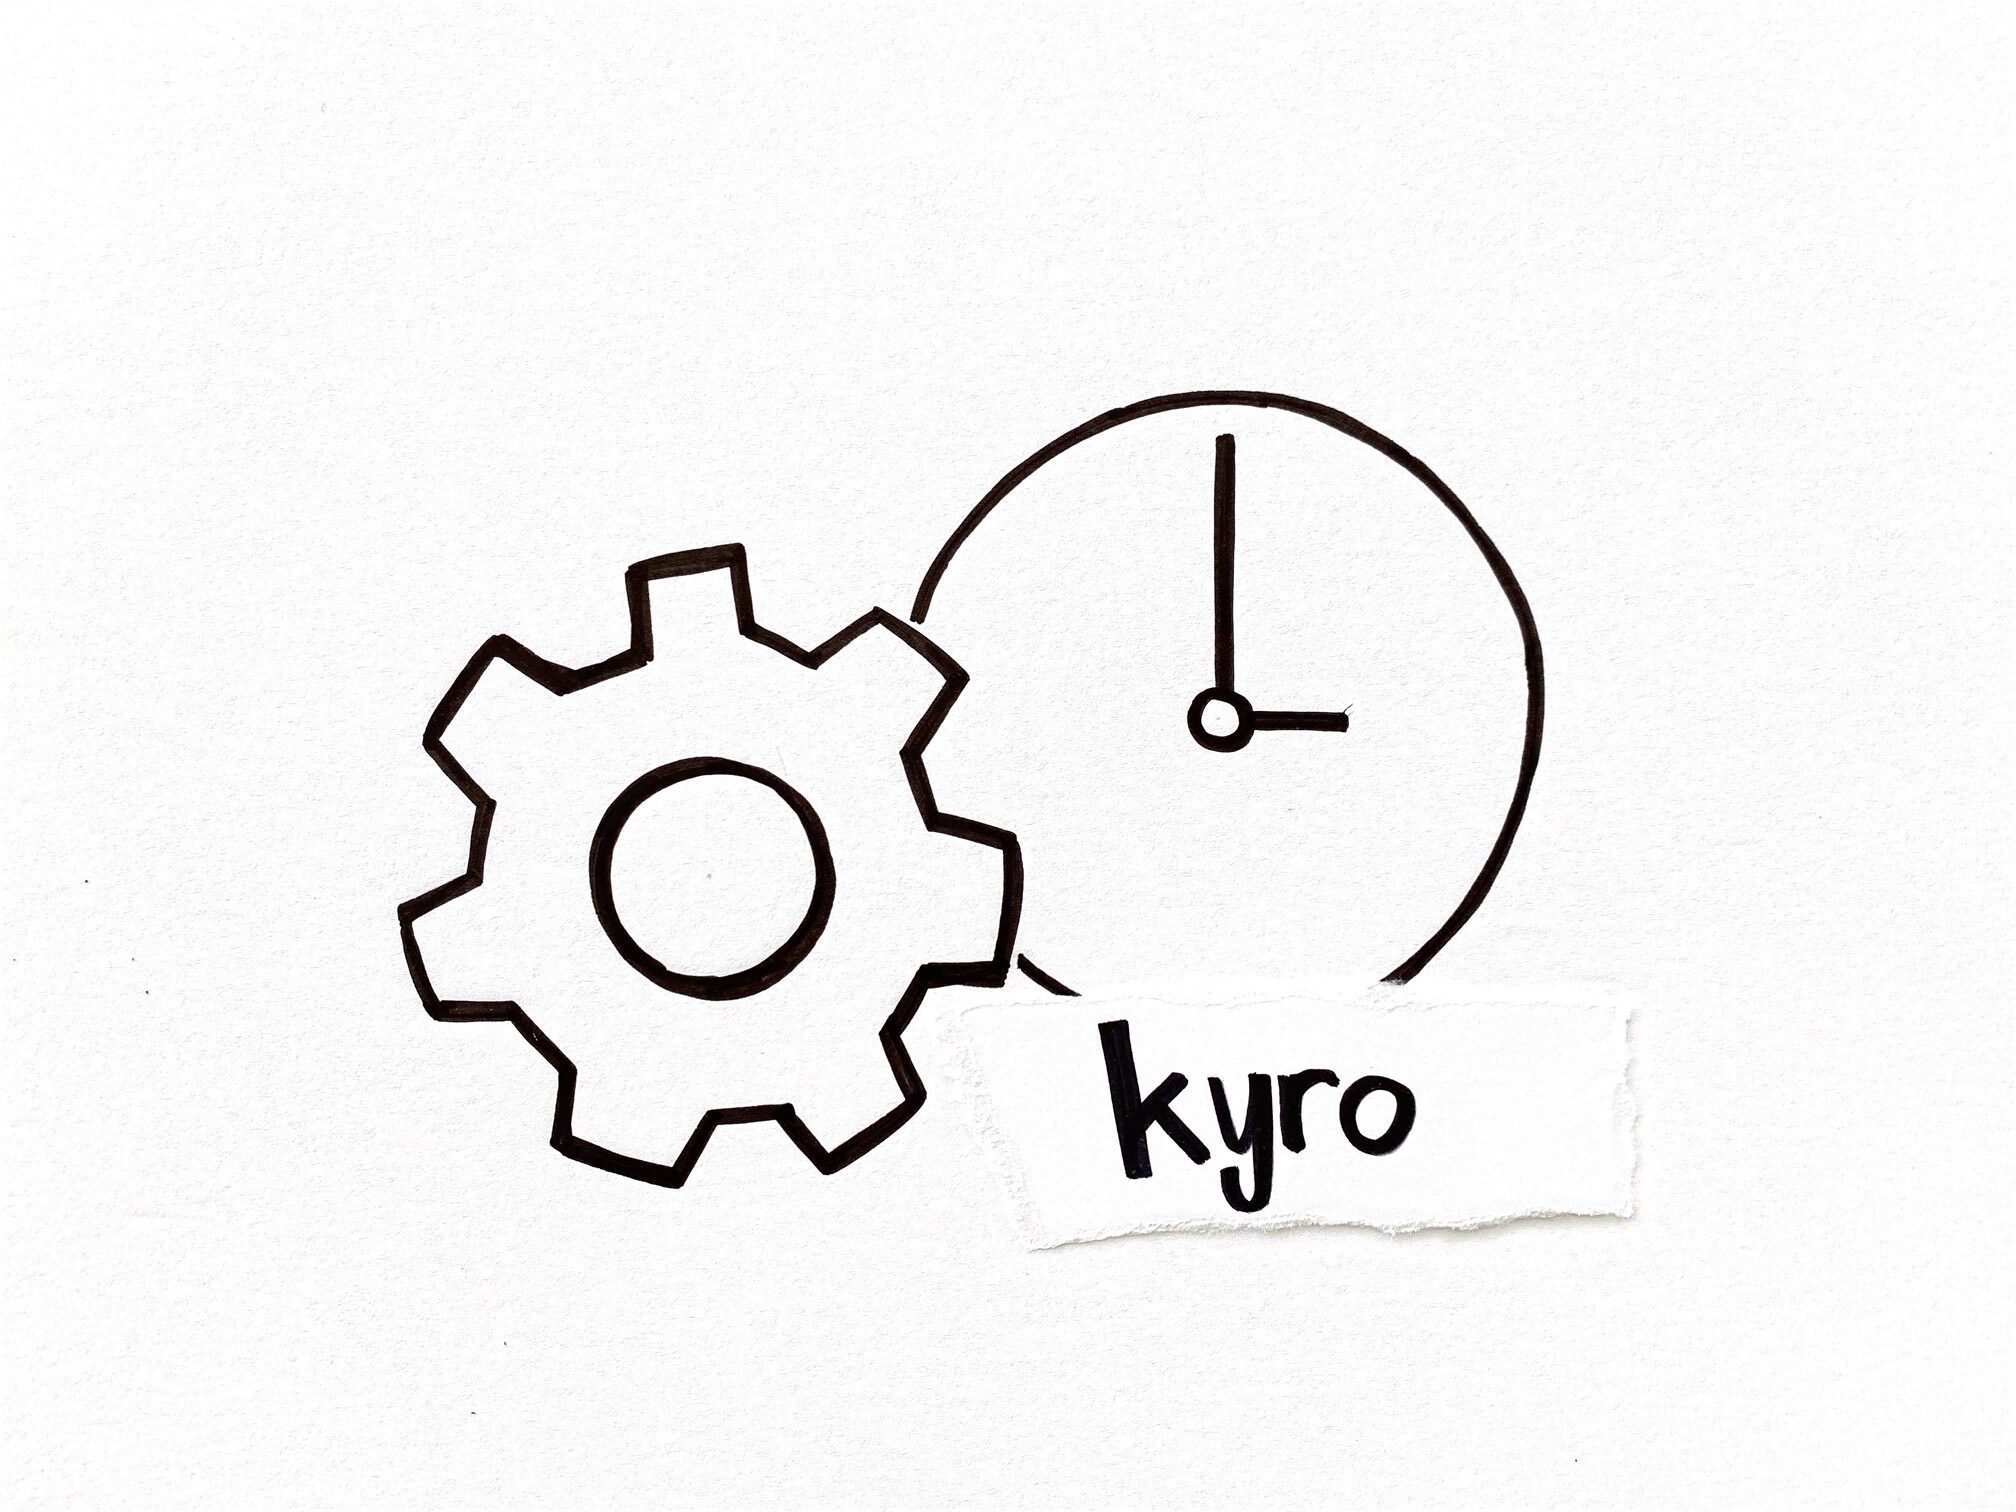 Skizze von einem Zahnrad und Uhr, darunter steht der Begriff kyro. Als Symbol für den Beitrag "kyro - das OpEx-Tool, das aus einer Prozessoptimierung heraus entstanden ist"